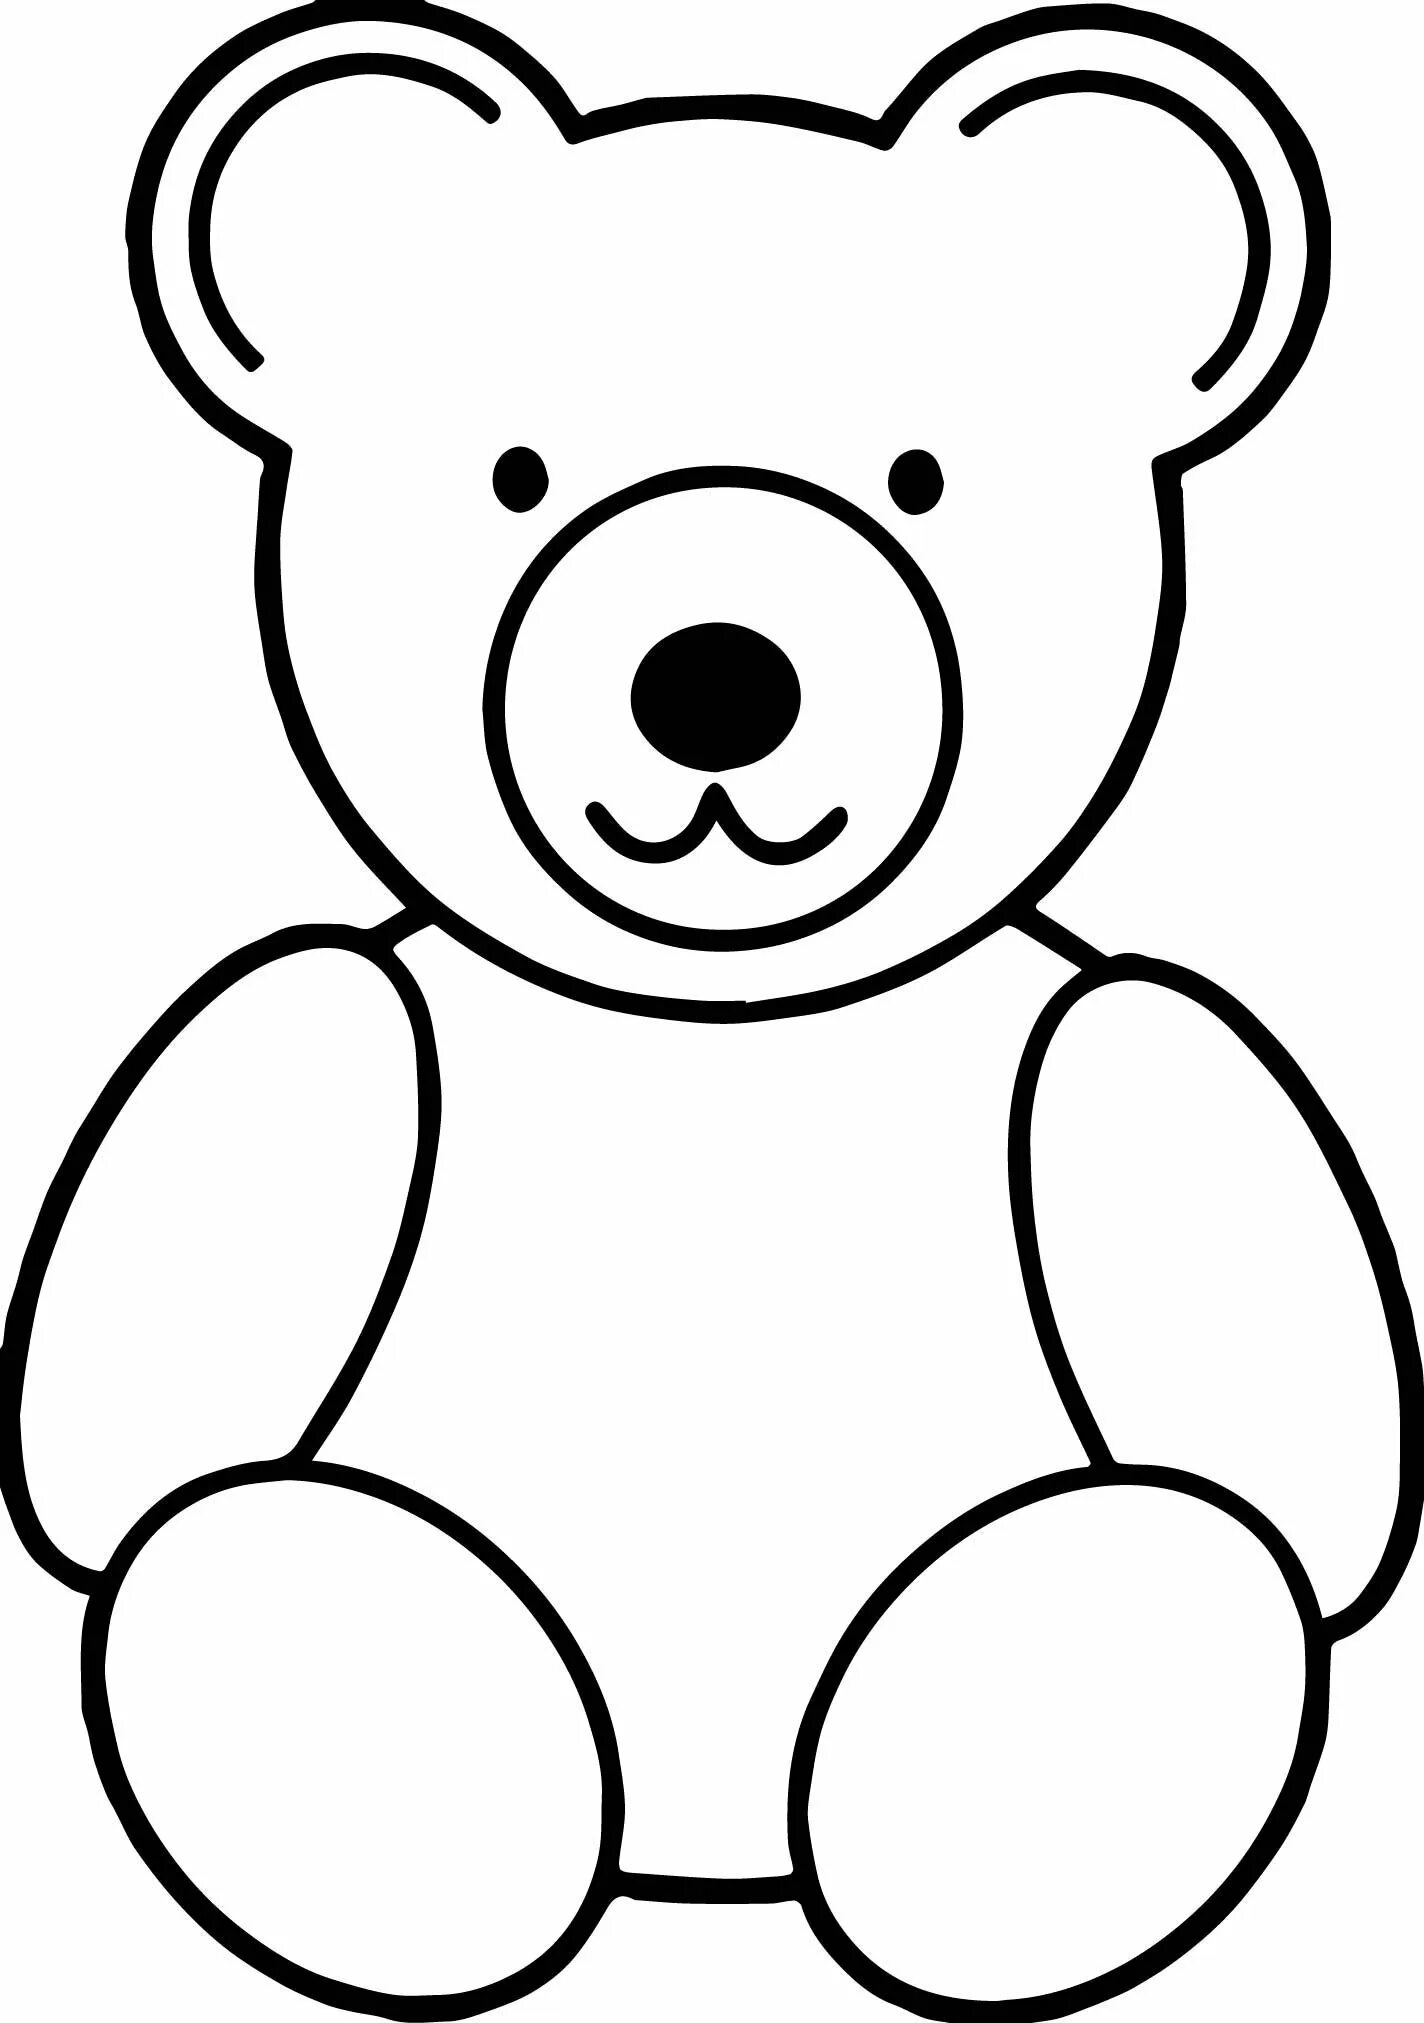 Раскраска. Медвежонок. Медвежонок раскраска для малышей. Медведь раскраска для детей. Раскраска "мишки". Раскраски для детей 3 года мишки